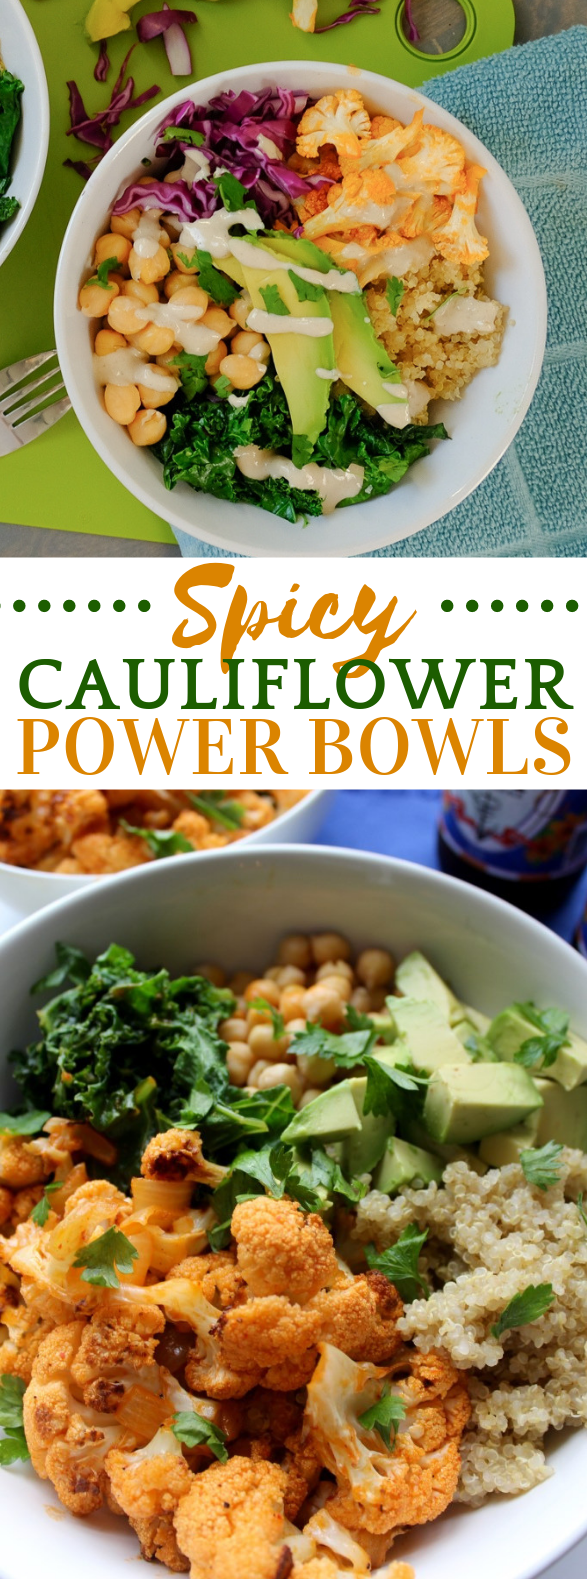 Spicy Cauliflower Power Bowl #vegetarian #glutenfree